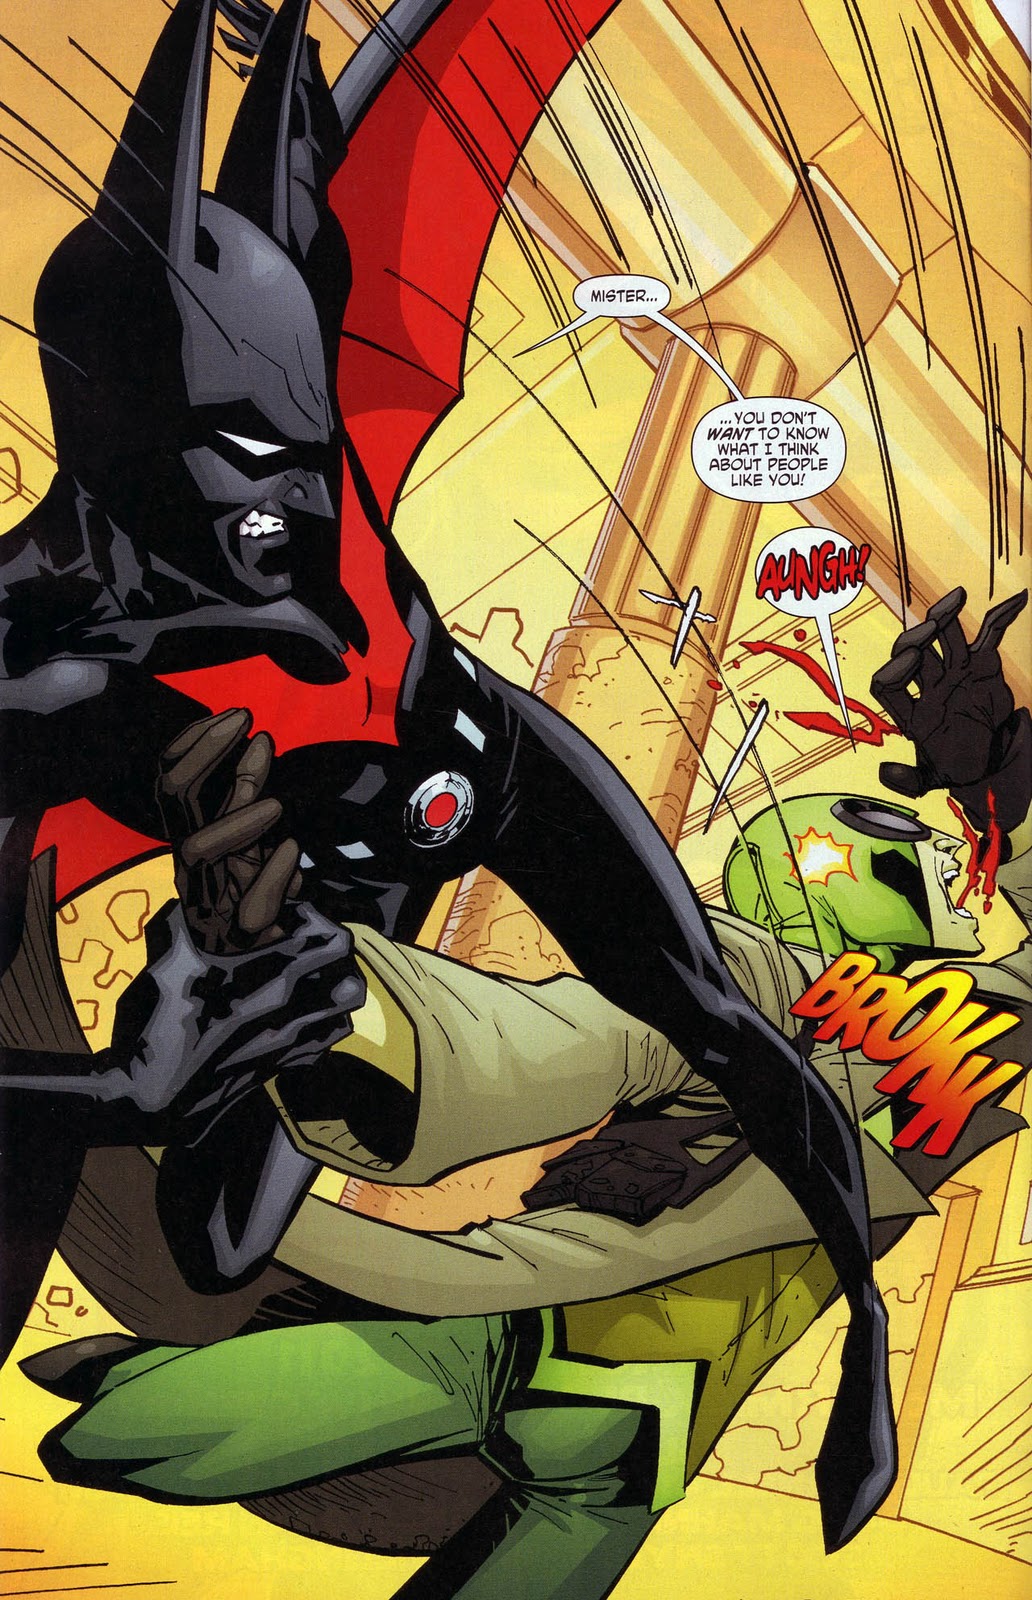 X-men Supreme: Batman Beyond #3 - The Next Generation of Awesome